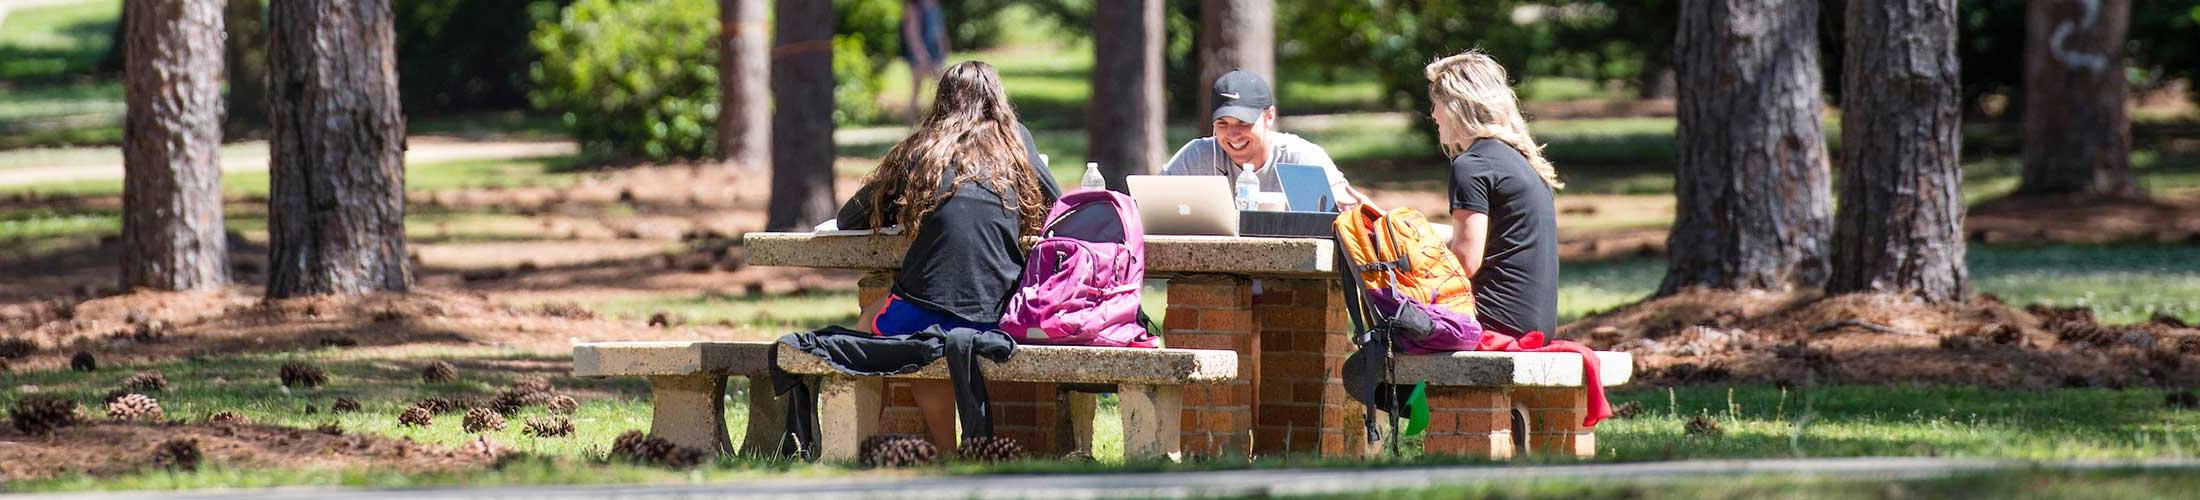 学生在校园户外的桌子上学习.